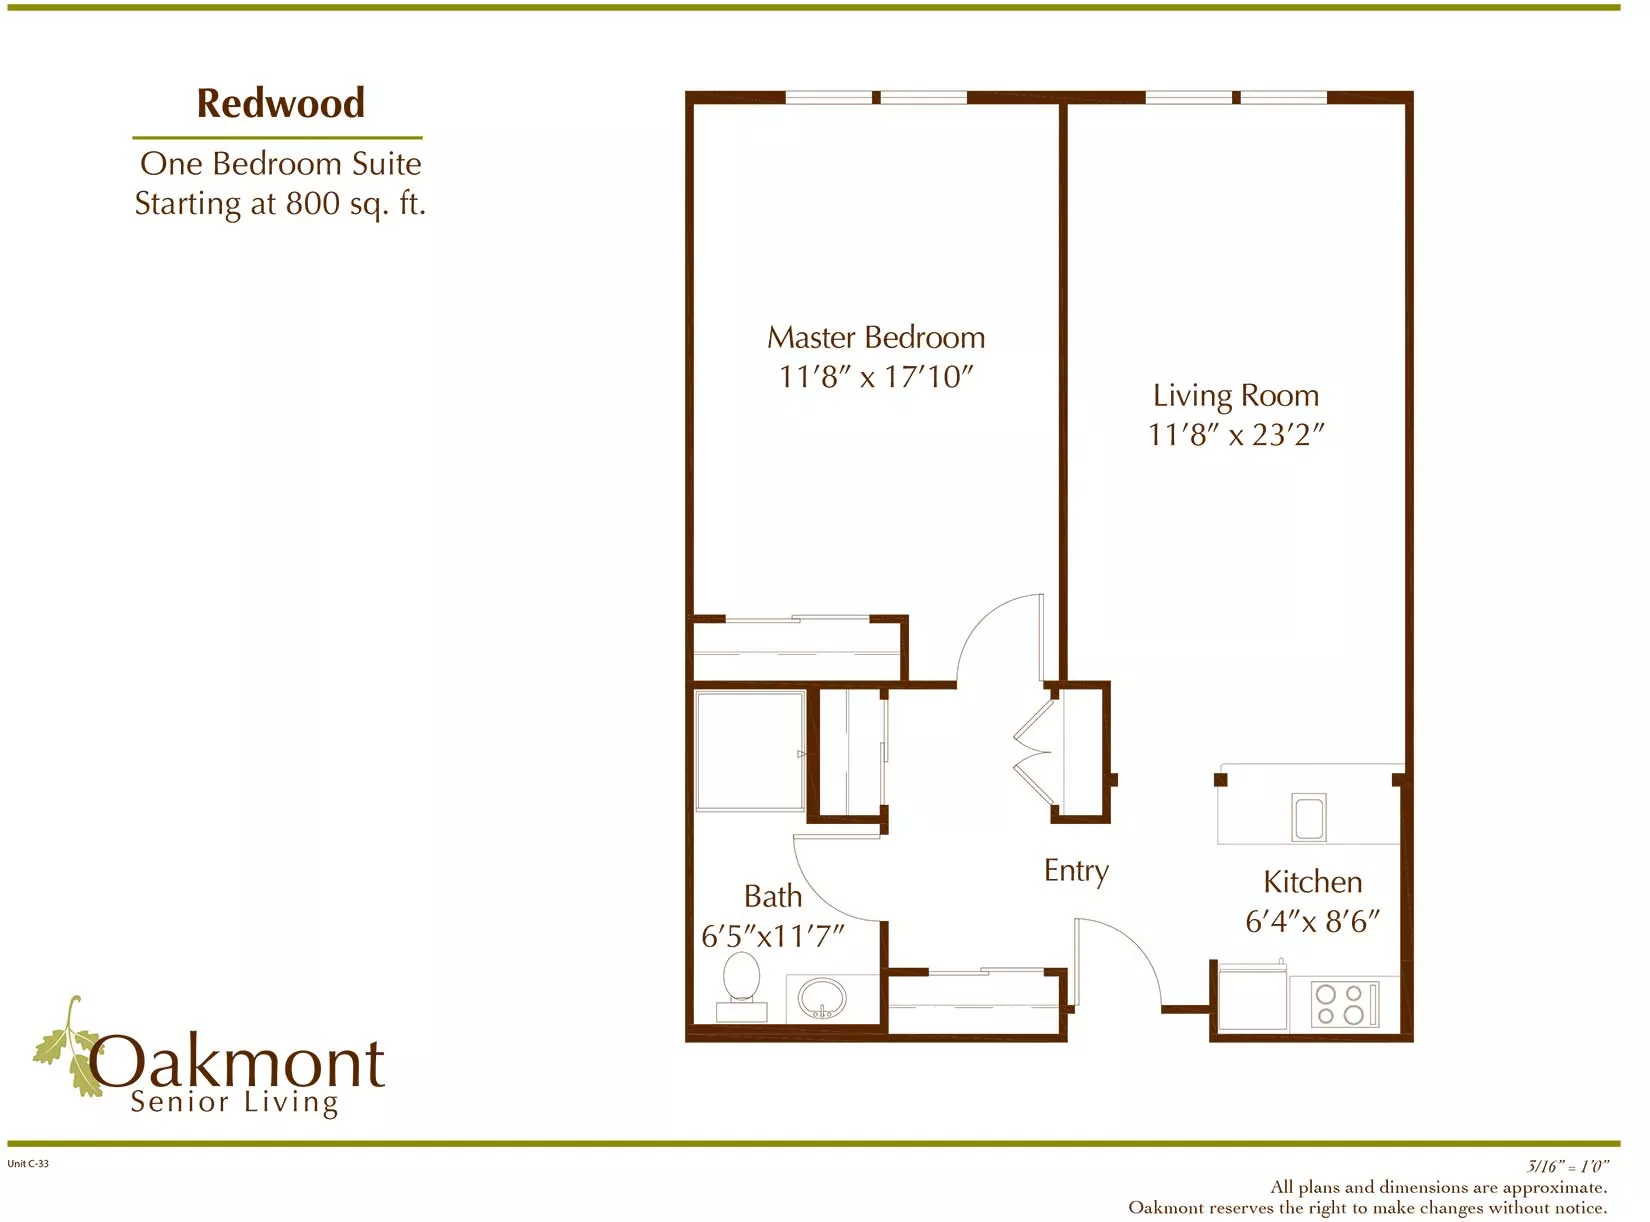 Redwood One bedroom suite floor plan